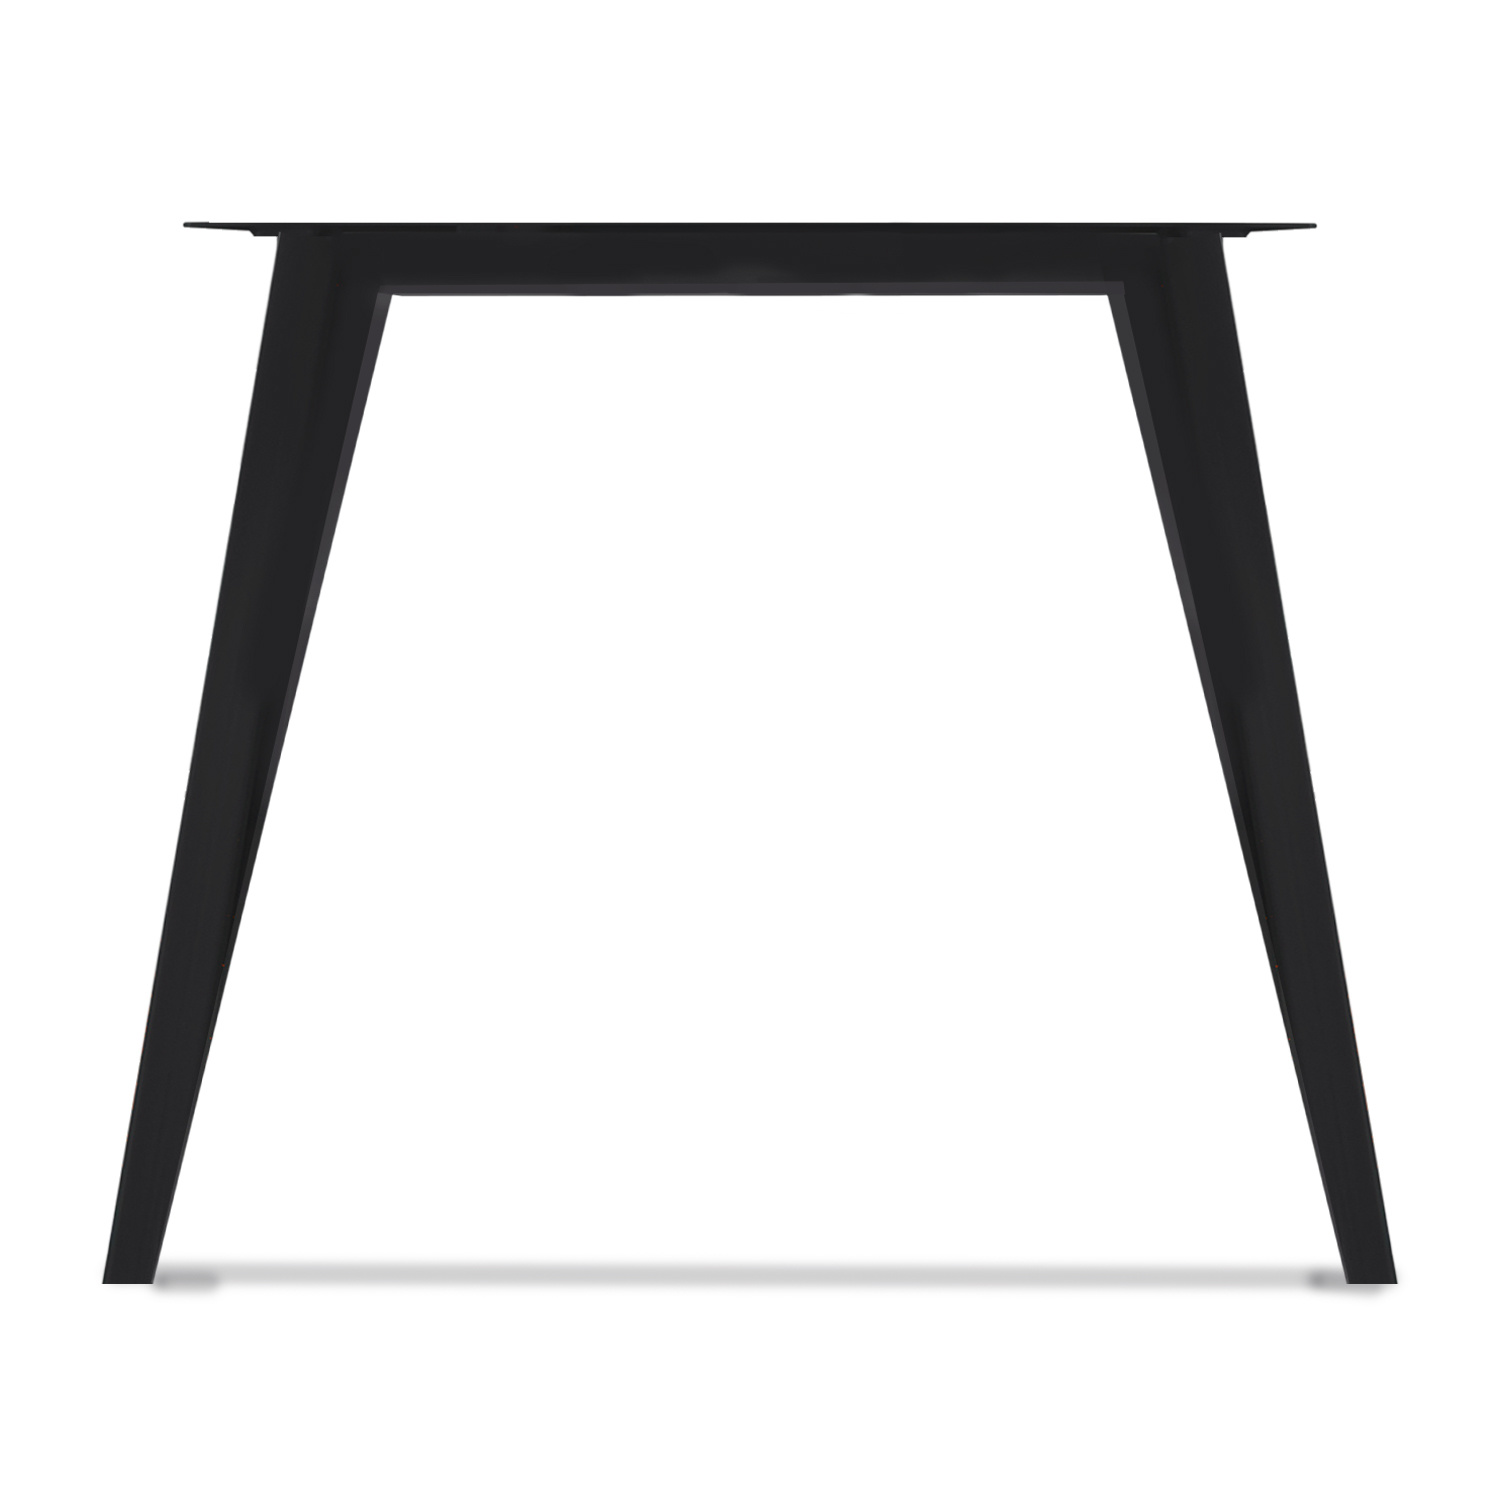  Stalen N-tafelpoten SIERLIJK (SET) - 94 cm breed - 72 cm hoog - N-poot GEPOEDERCOAT zwart